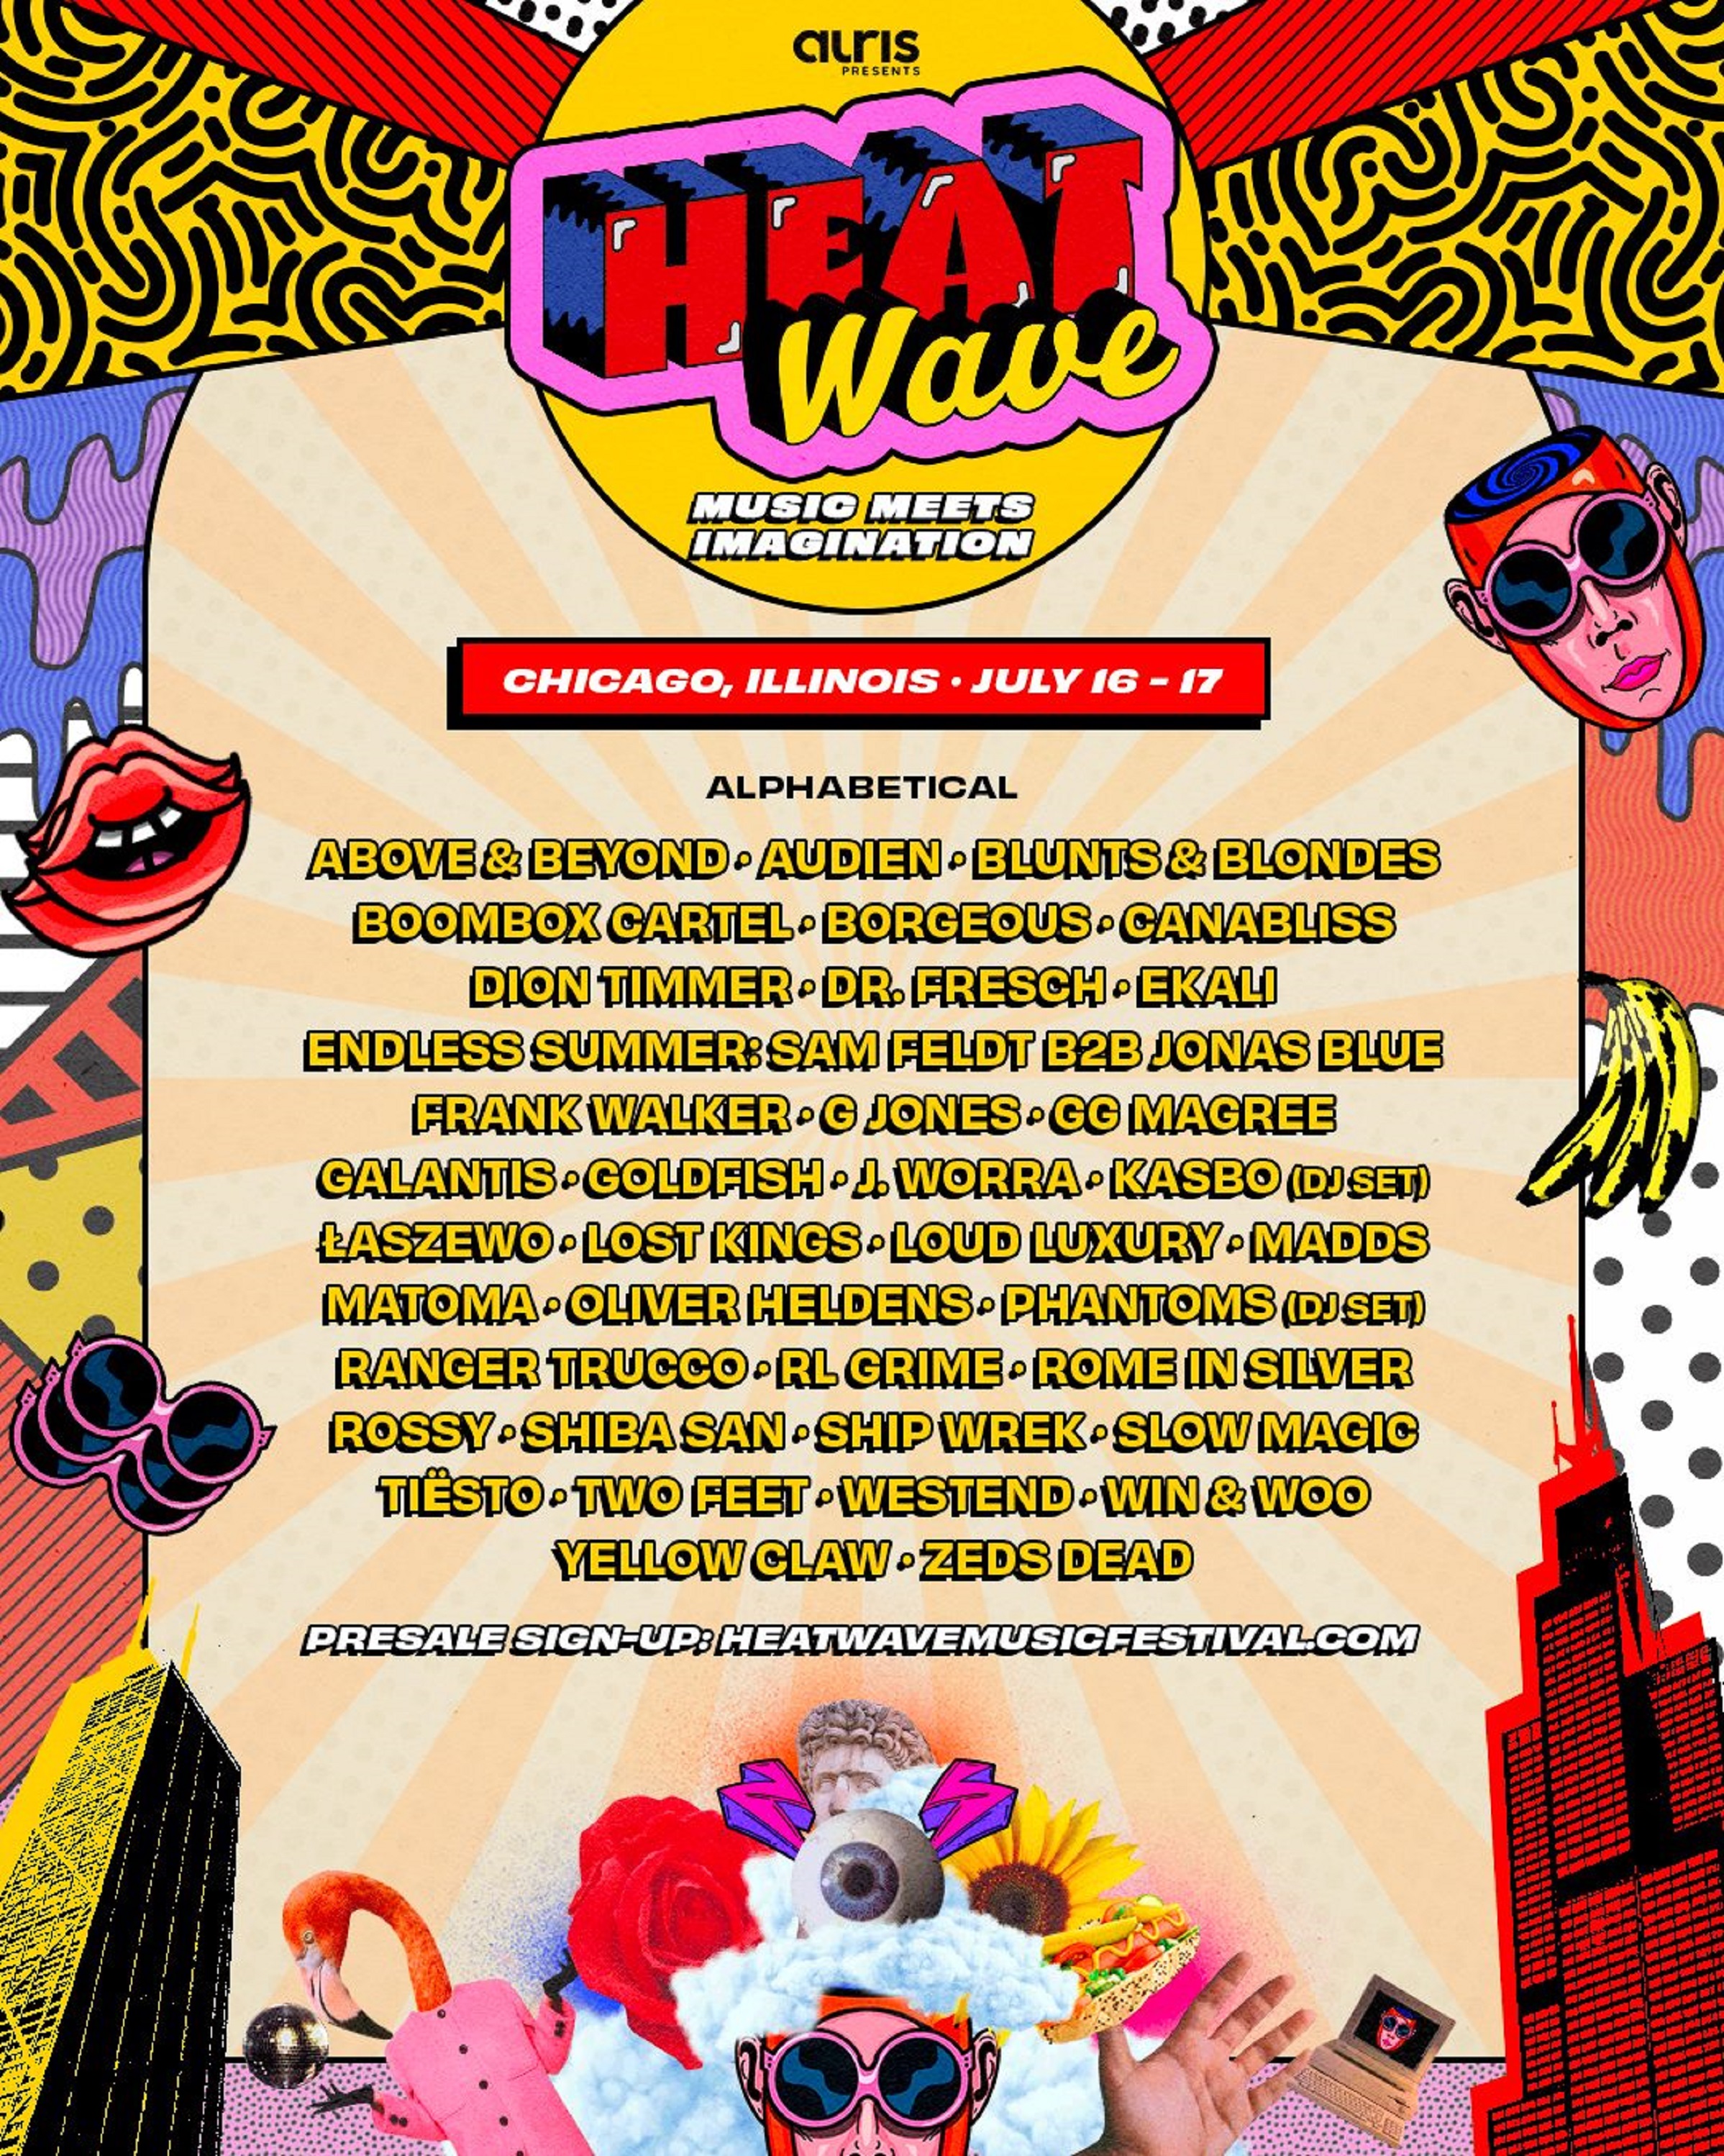 Heatwave Music Festival announces Chicago debut